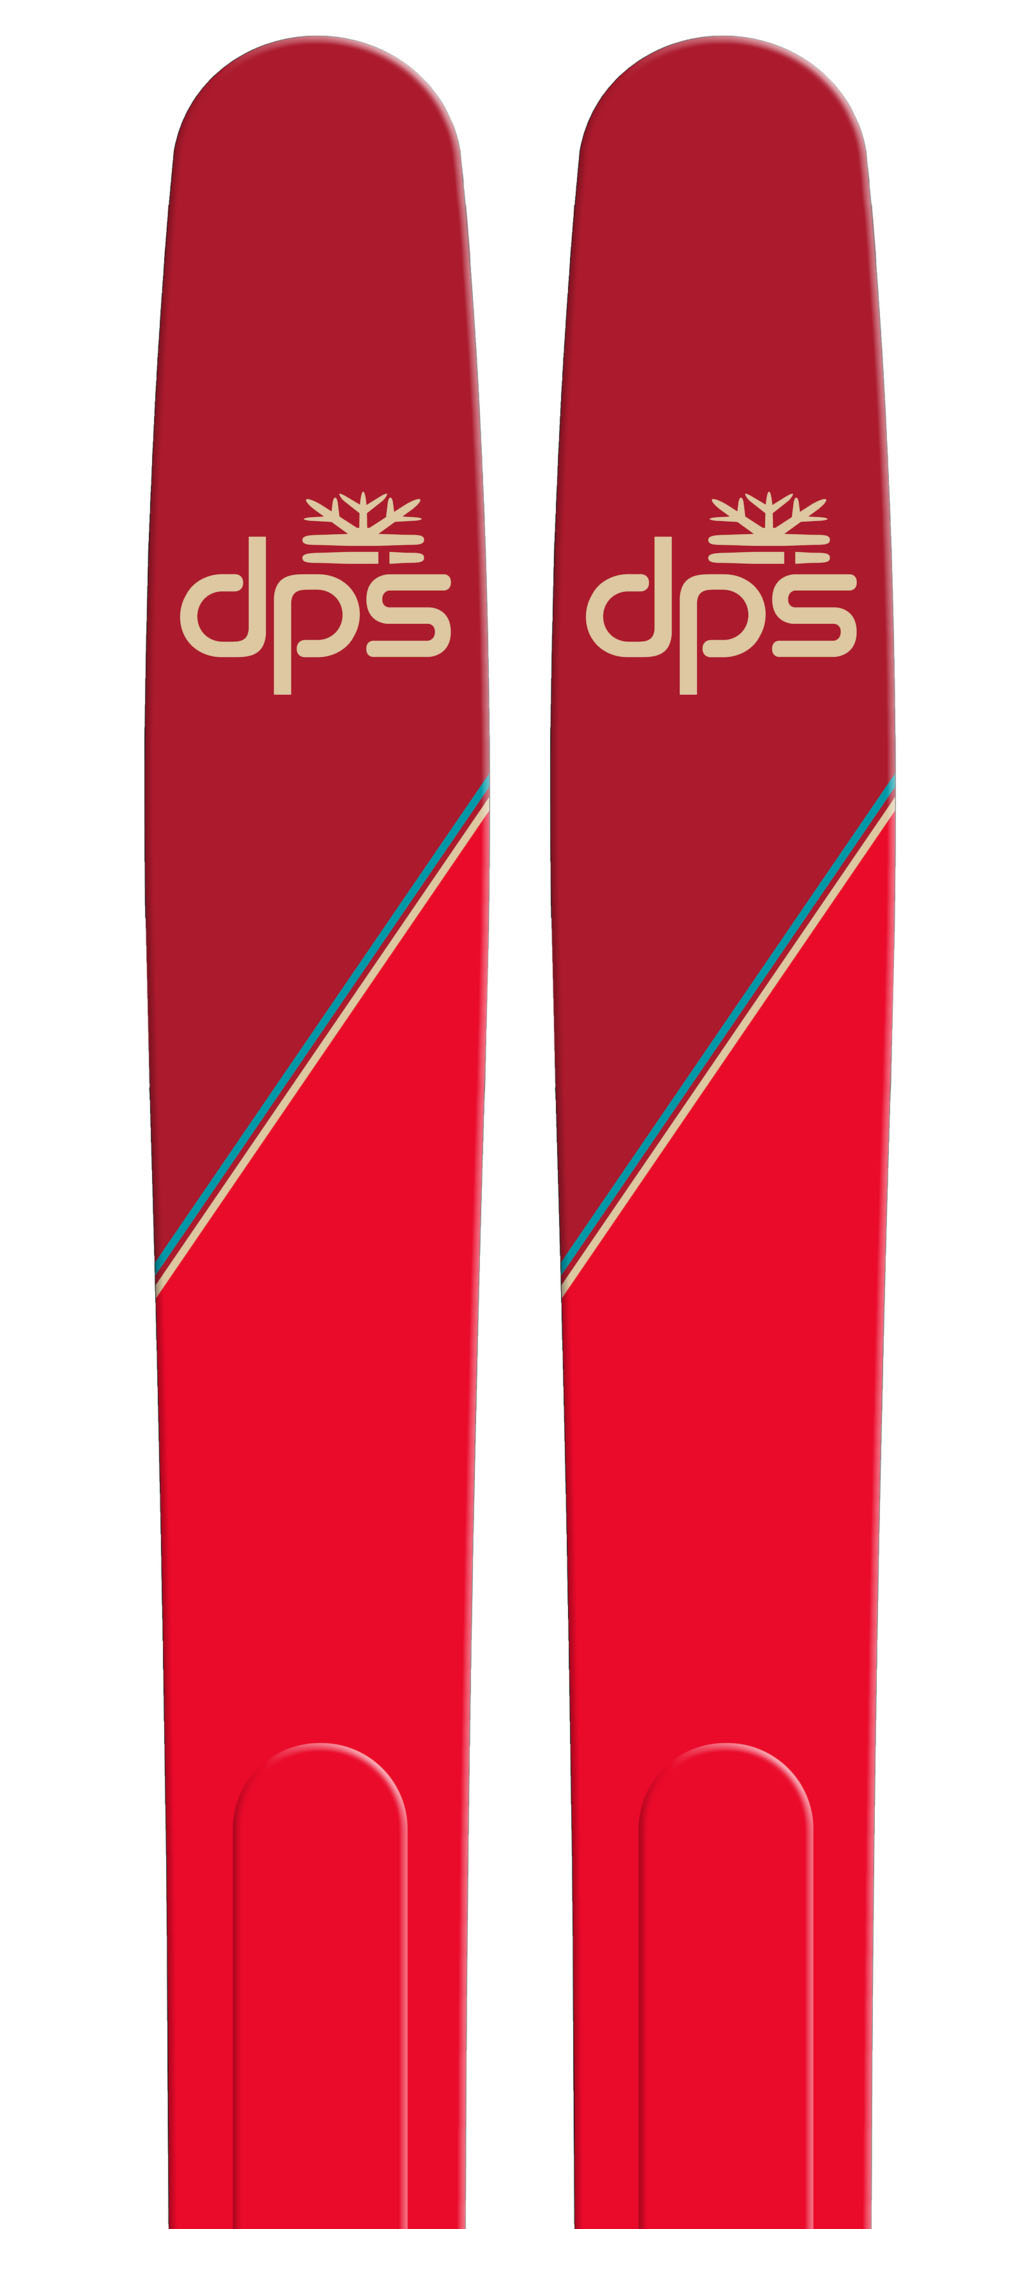 DPS Skis Lotus 124 Pagoda backcountry skis